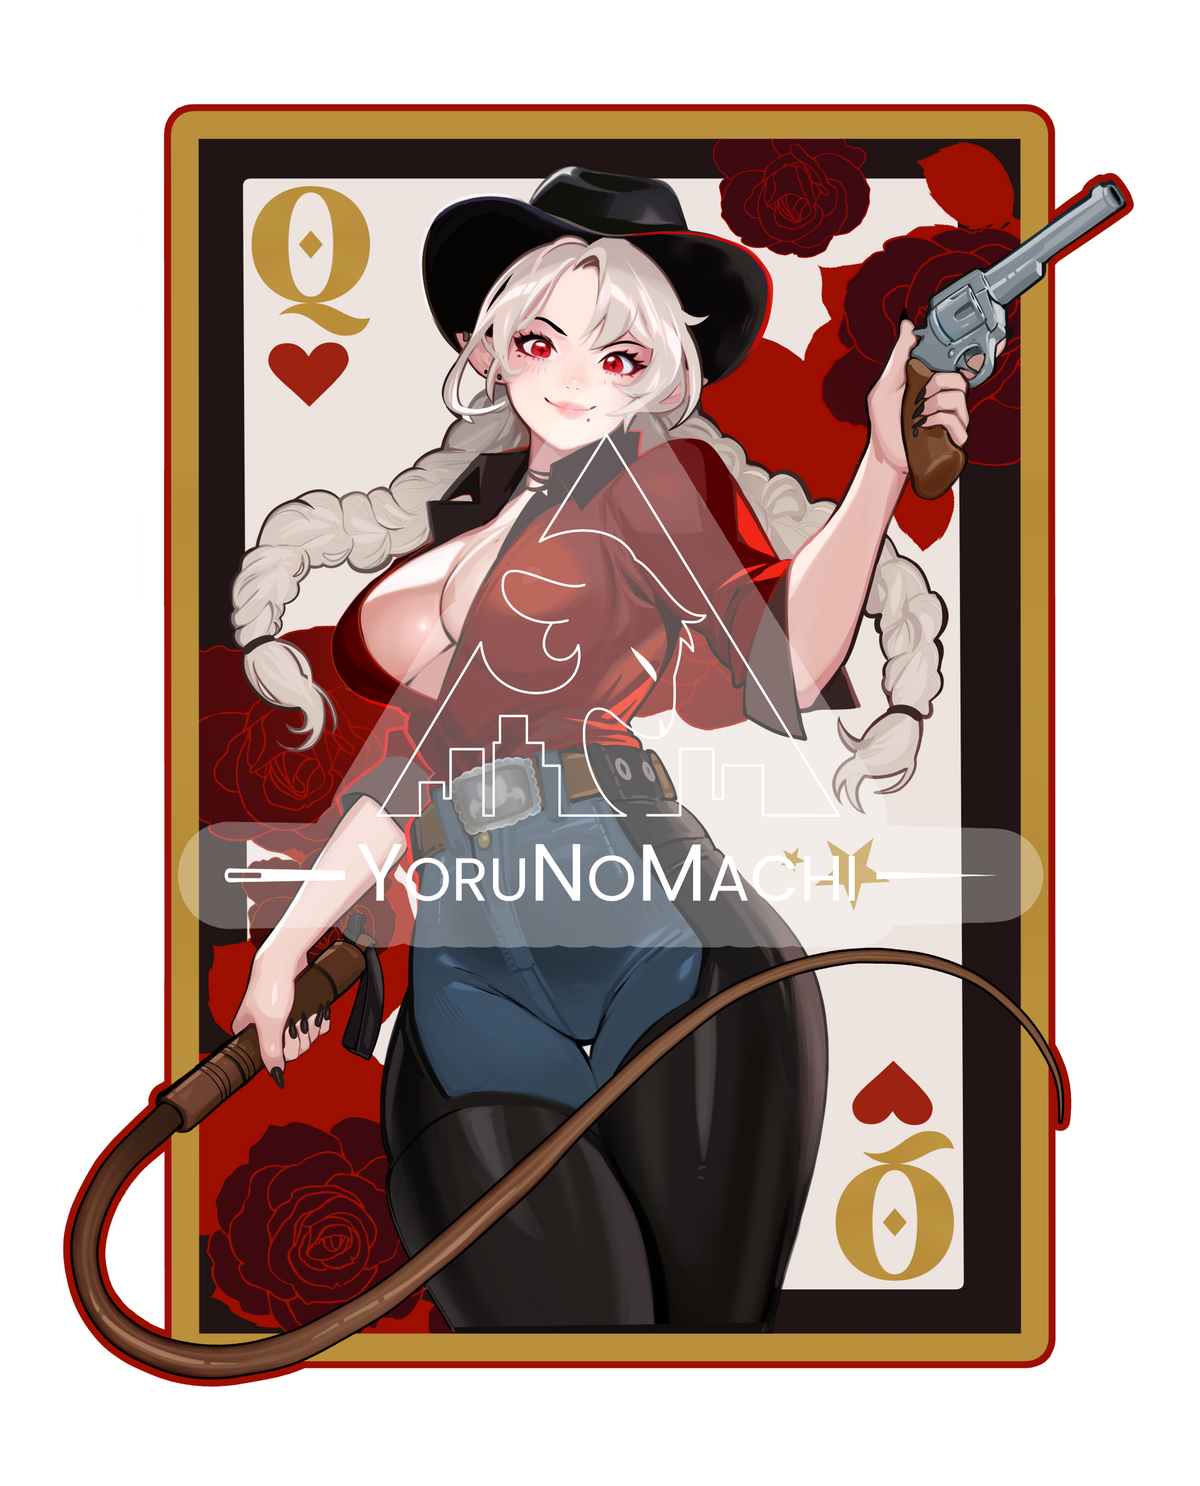 Queen of Hearts Sticker